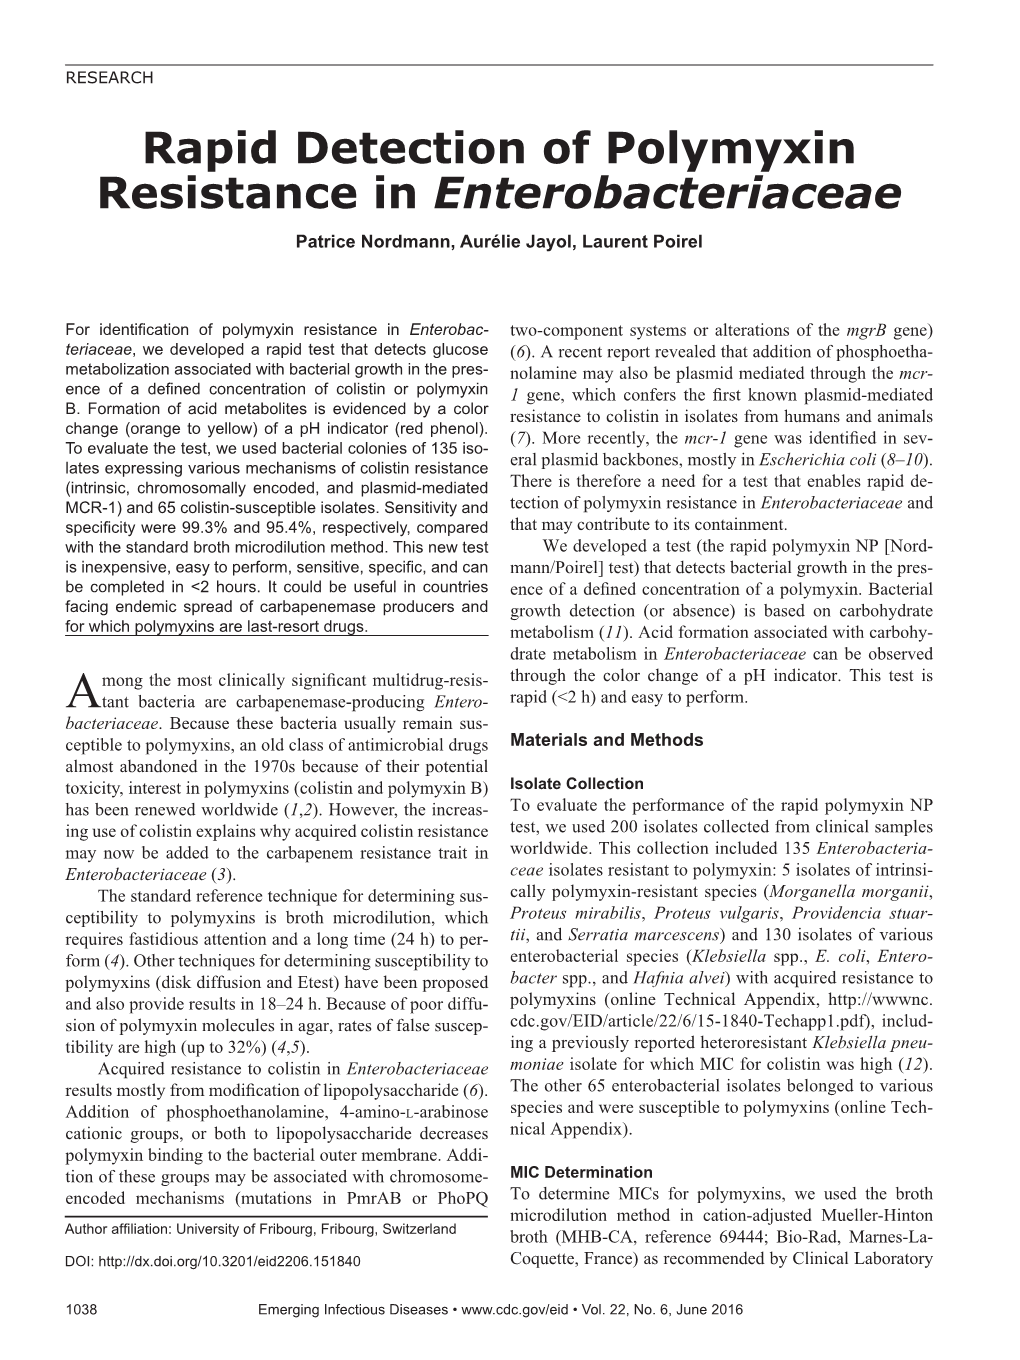 Rapid Detection of Polymyxin Resistance in Enterobacteriaceae Patrice Nordmann, Aurélie Jayol, Laurent Poirel